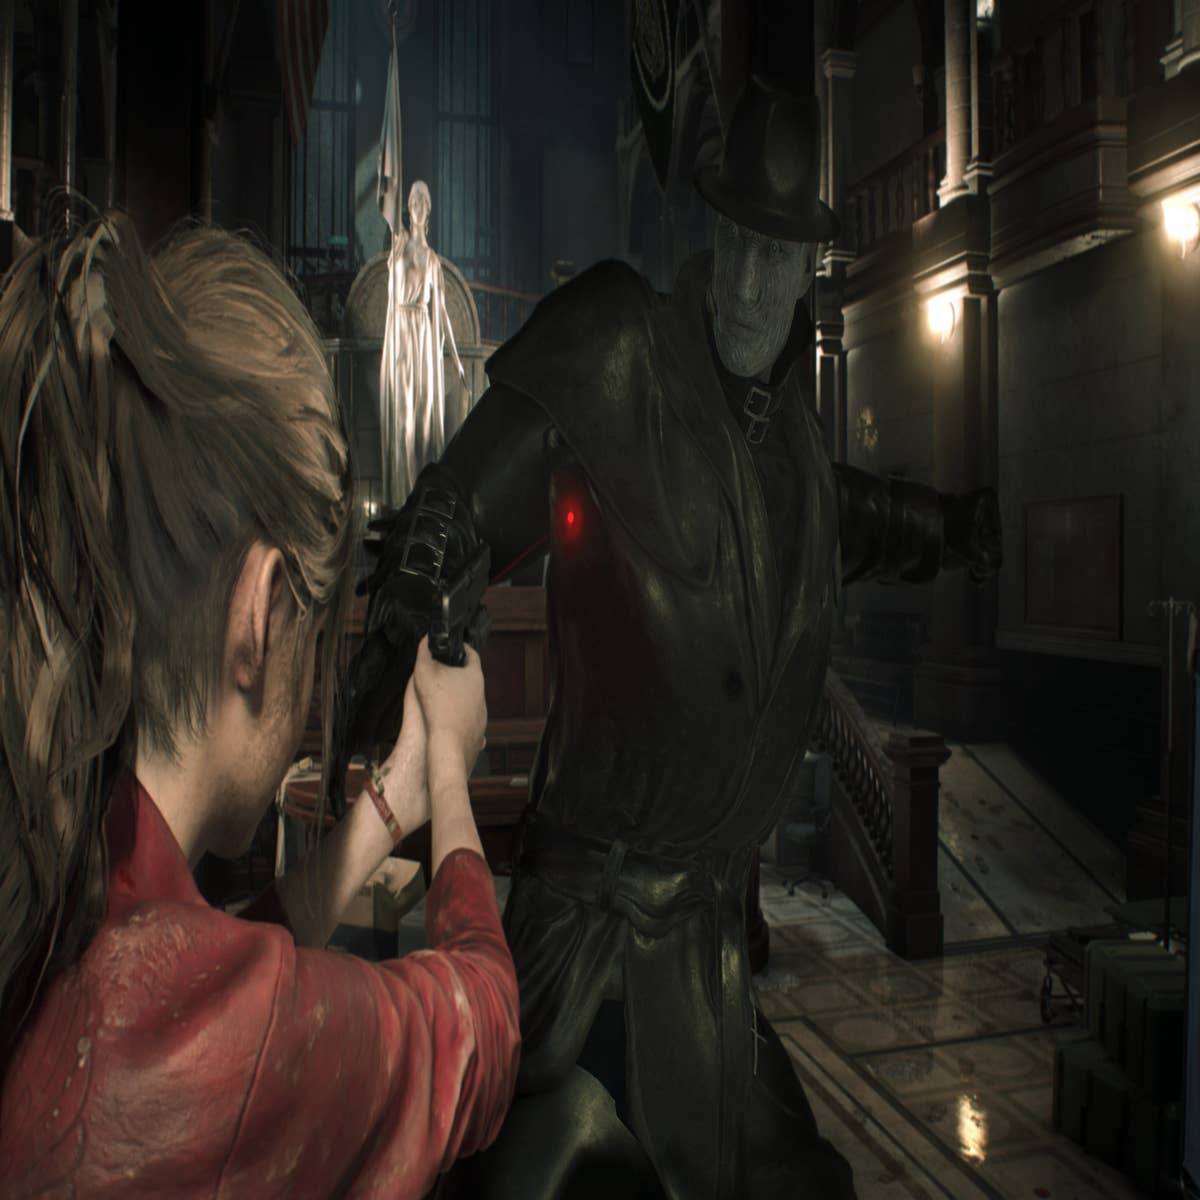 How Resident Evil 2 Shaped The Modern Horror Landscape